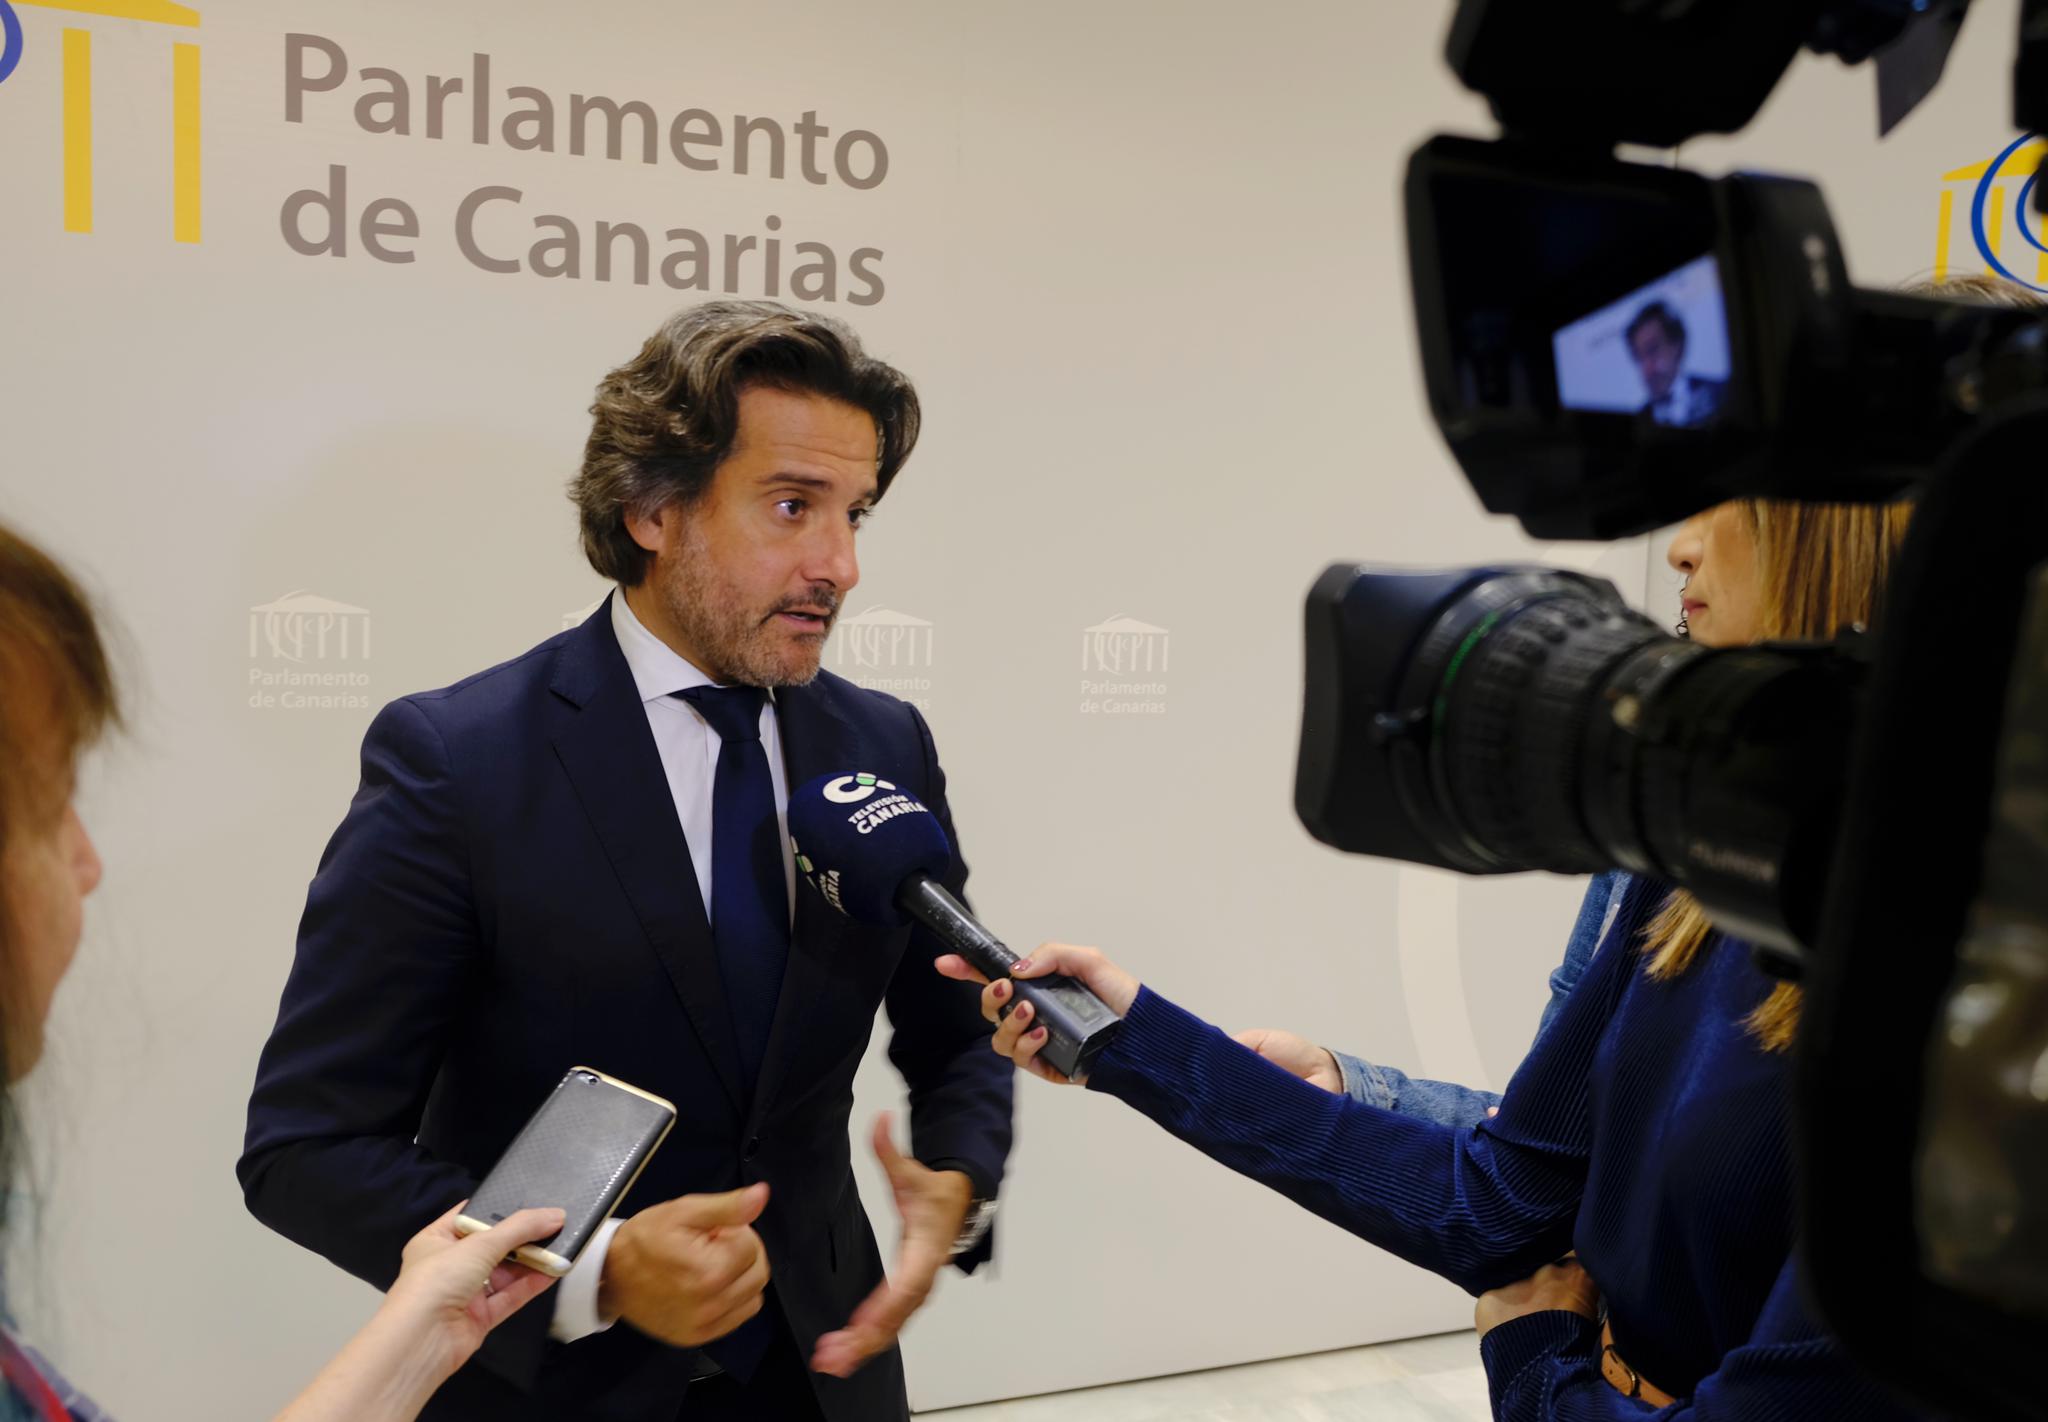 El presidente del Parlamento de Canarias atendiendo a los medios de comunicación